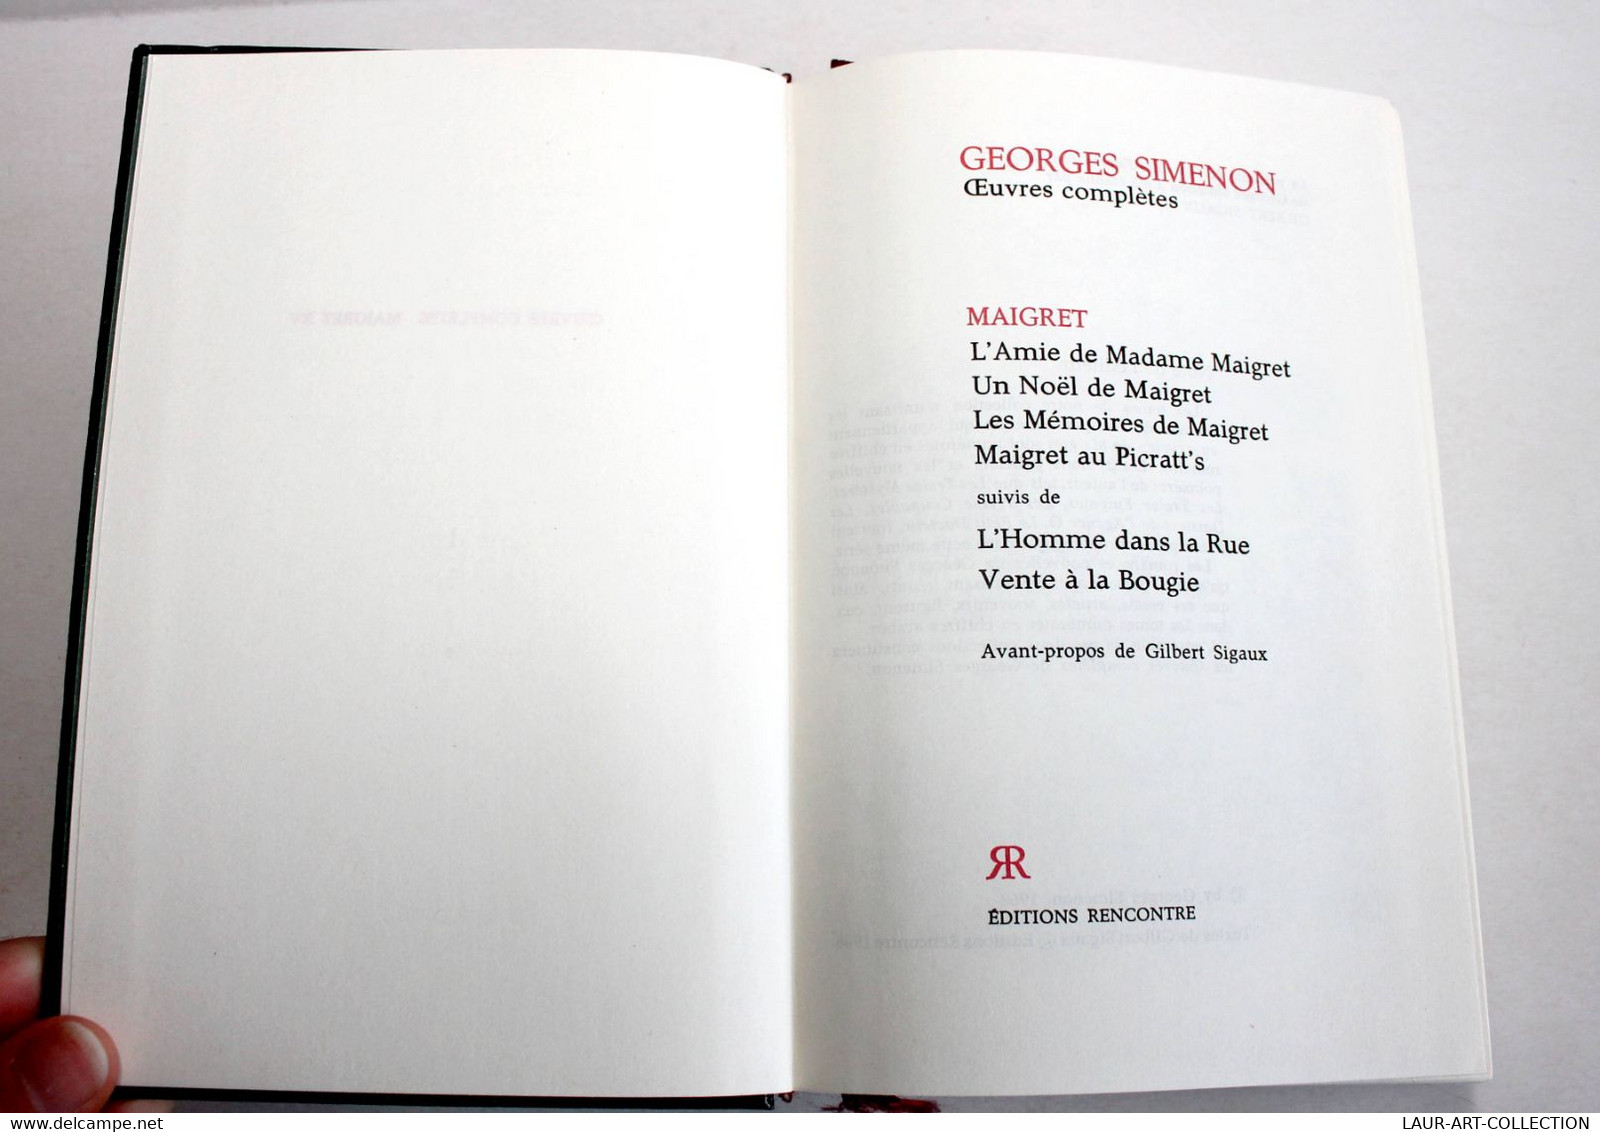 GEORGES SIMENON - OEUVRES COMPLETES - MAIGRET N°XV L'AMI DE Mme MAIGRET, UN NOEL / ANCIEN LIVRE DE COLLECTION (2301.242) - Simenon